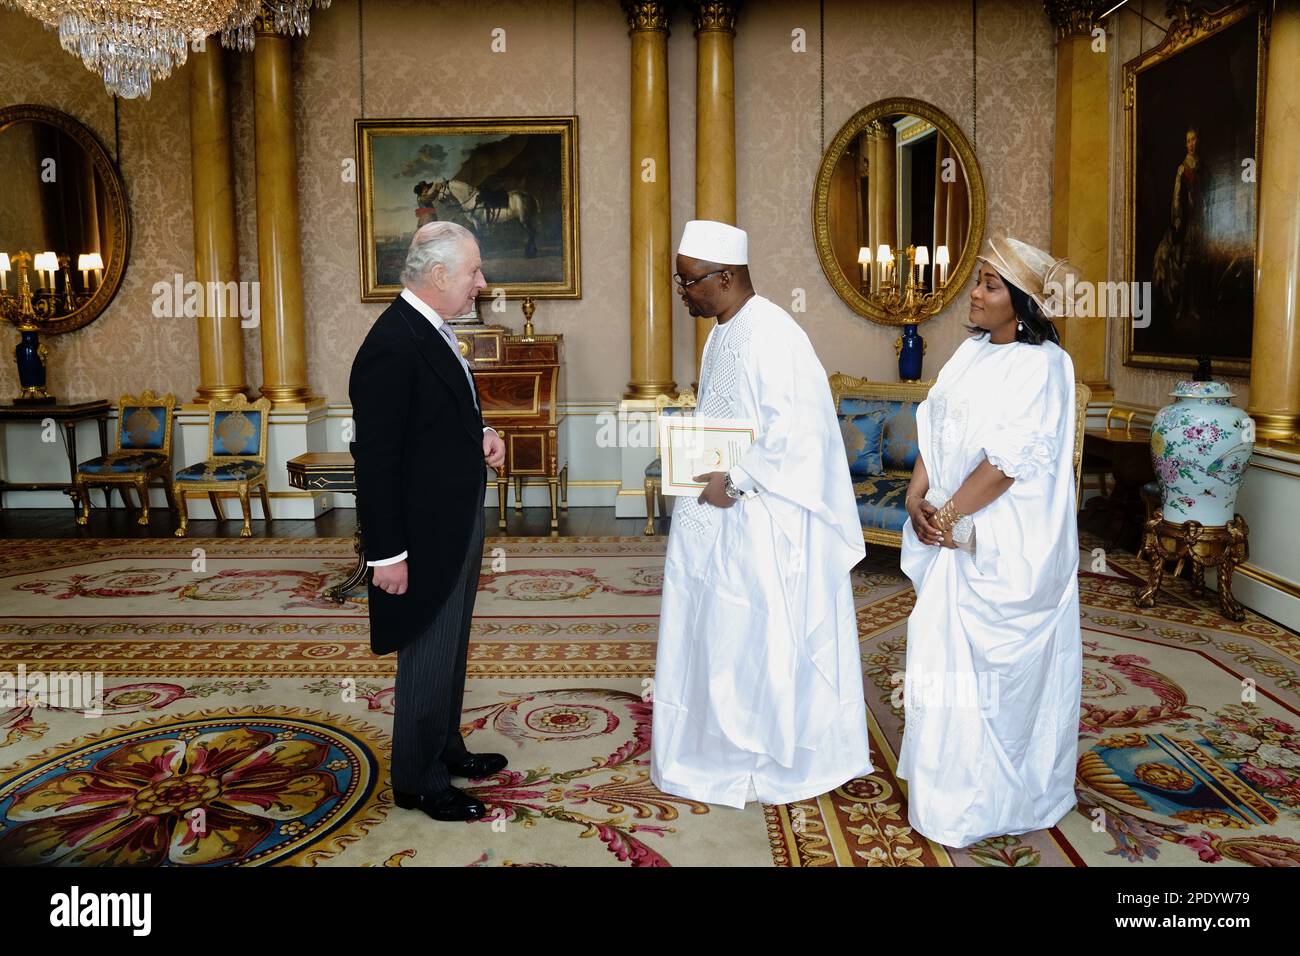 Le roi Charles III reçoit l'ambassadeur de la République de Guinée, Aly Diallo, lors d'une audience au Palais de Buckingham, Londres. Date de la photo: Mercredi 15 mars 2023. Banque D'Images